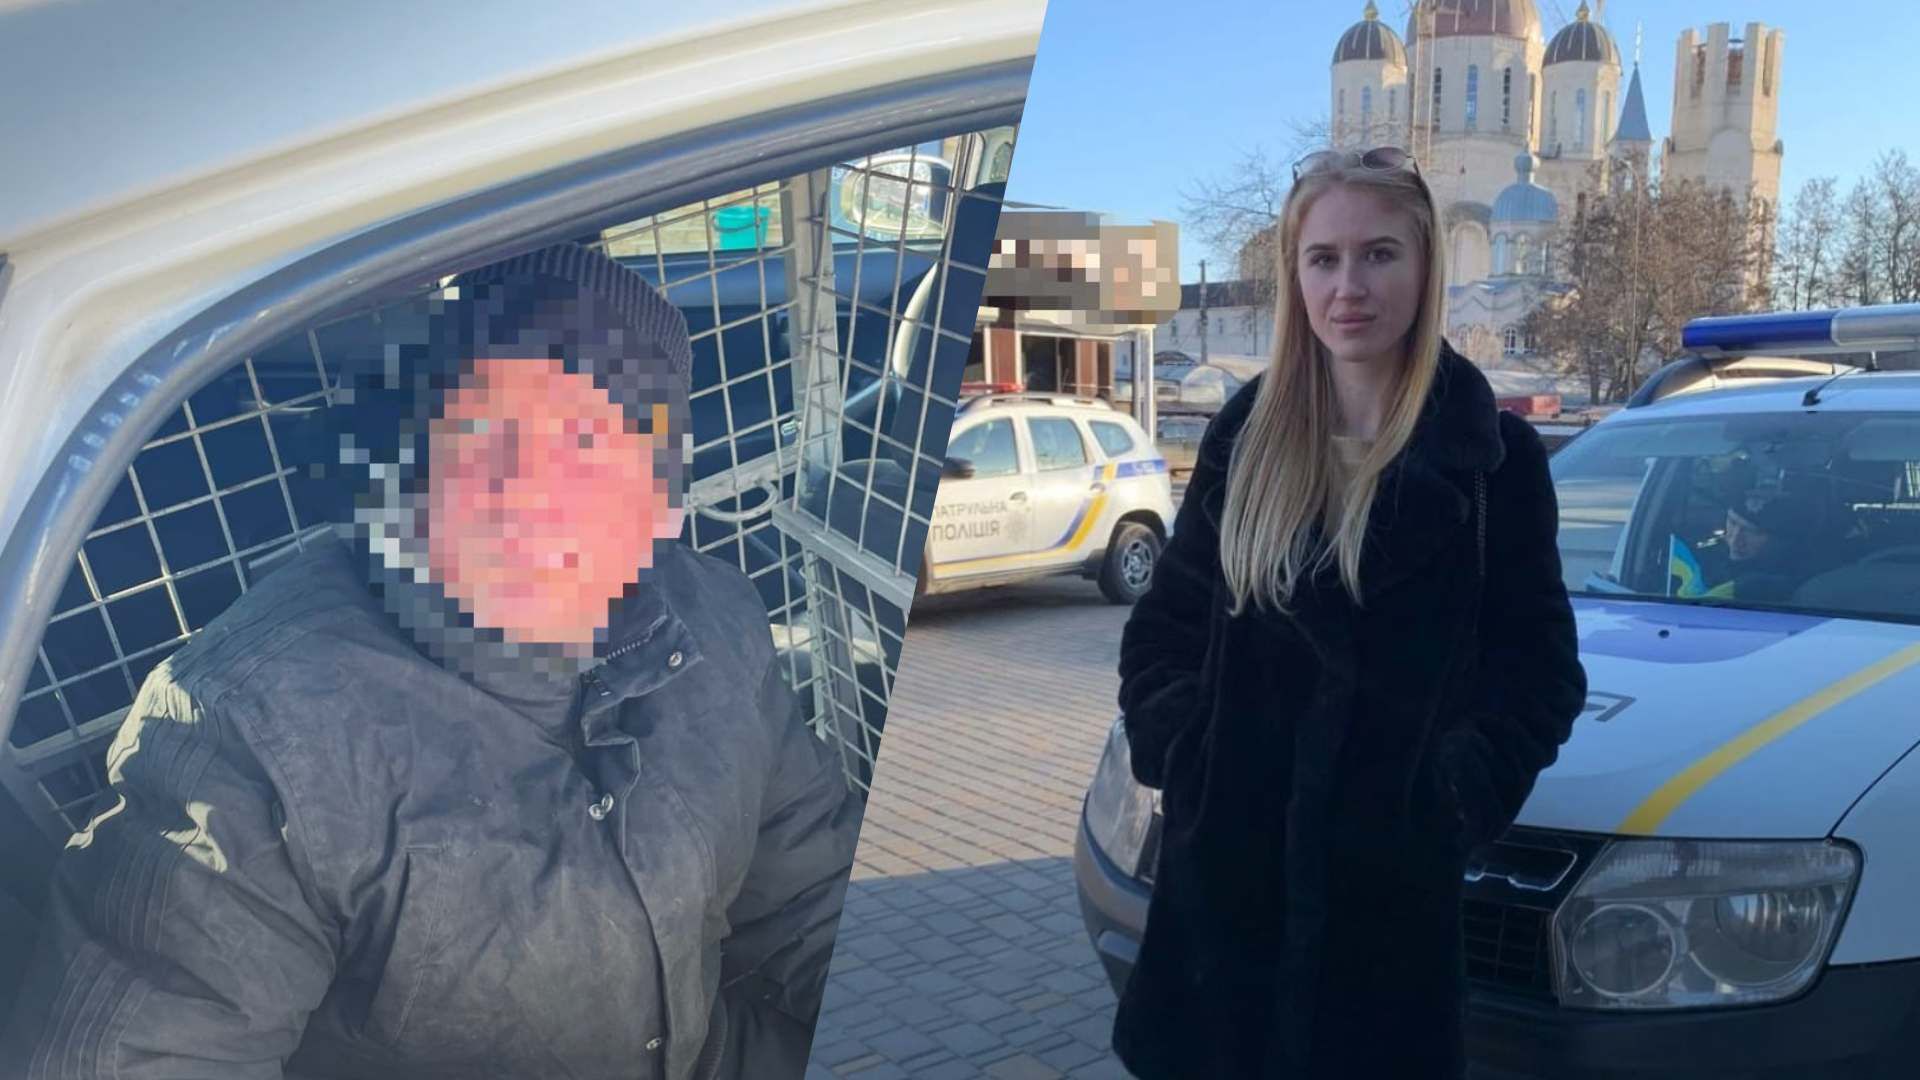 Тендітна жінка в Одесі затримала злочинця і здала його поліції: фото - 24 Канал